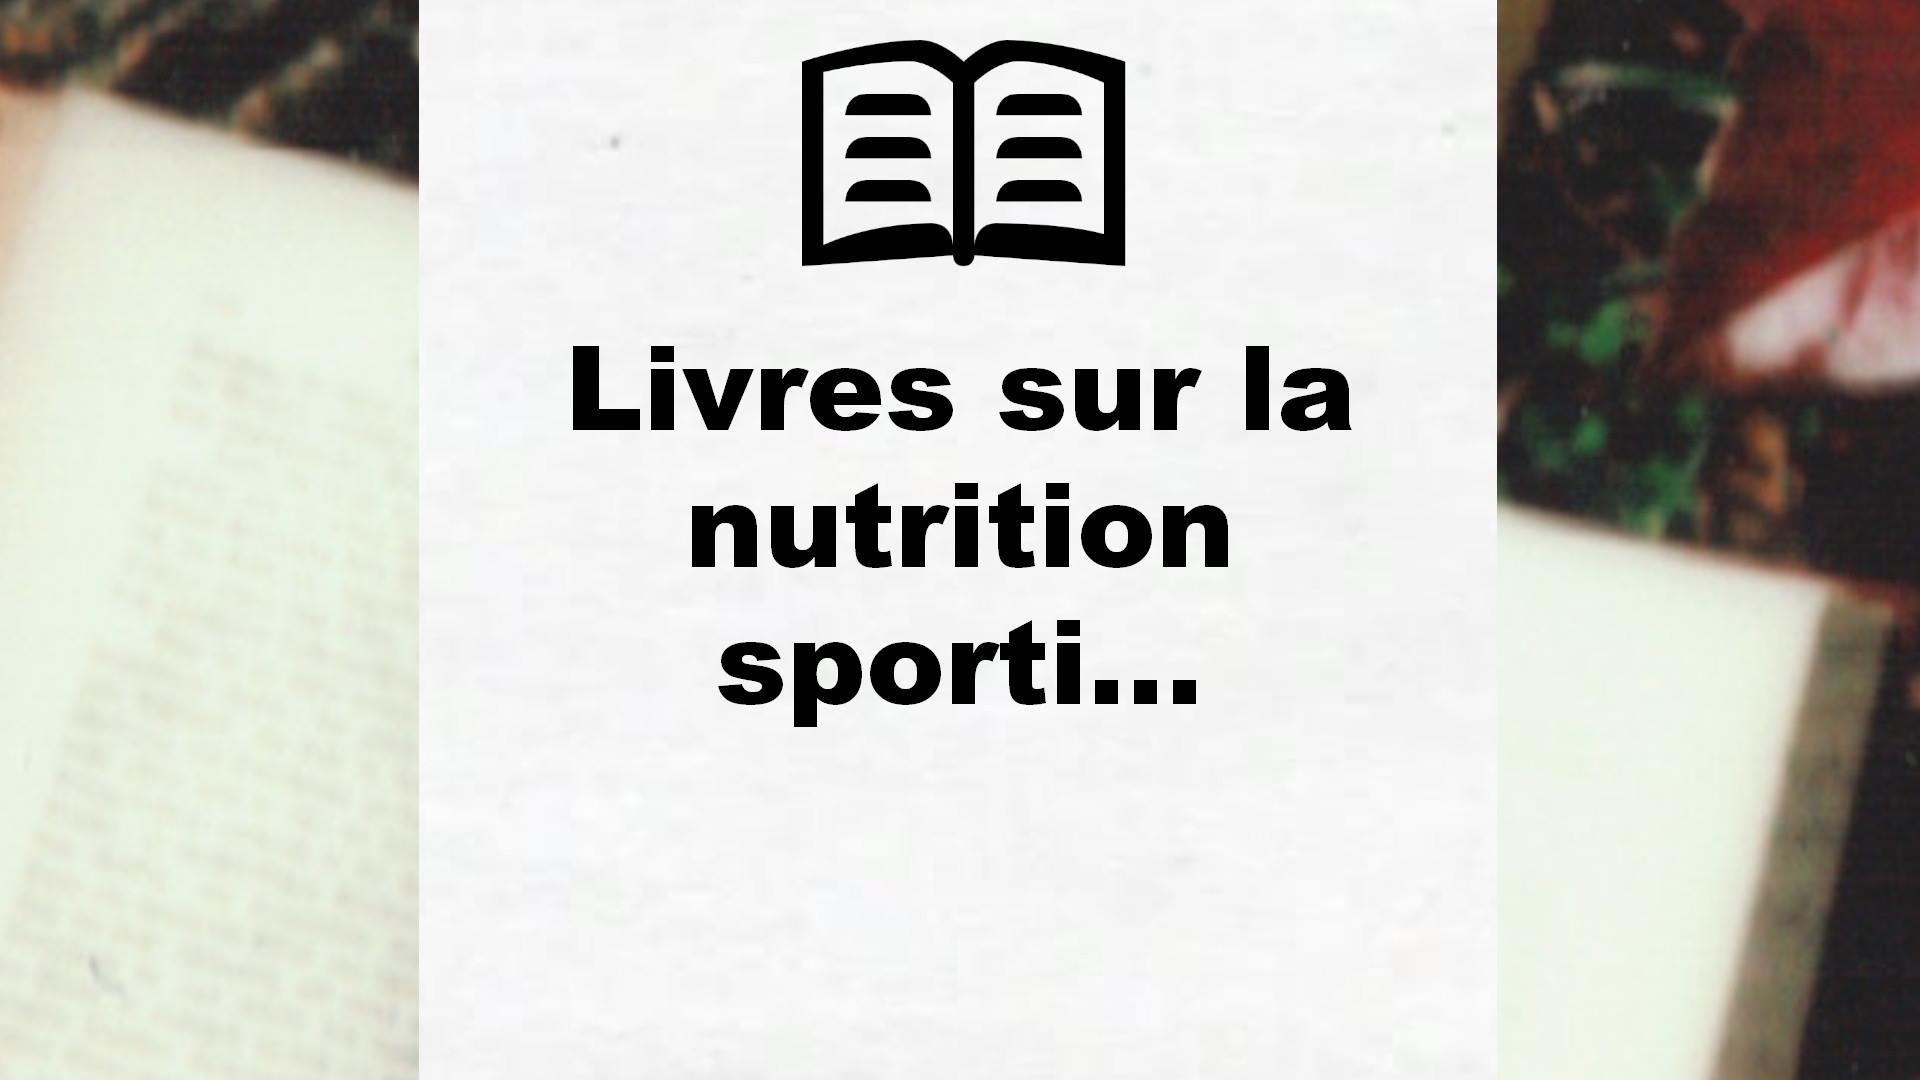 Livres sur la nutrition sportive